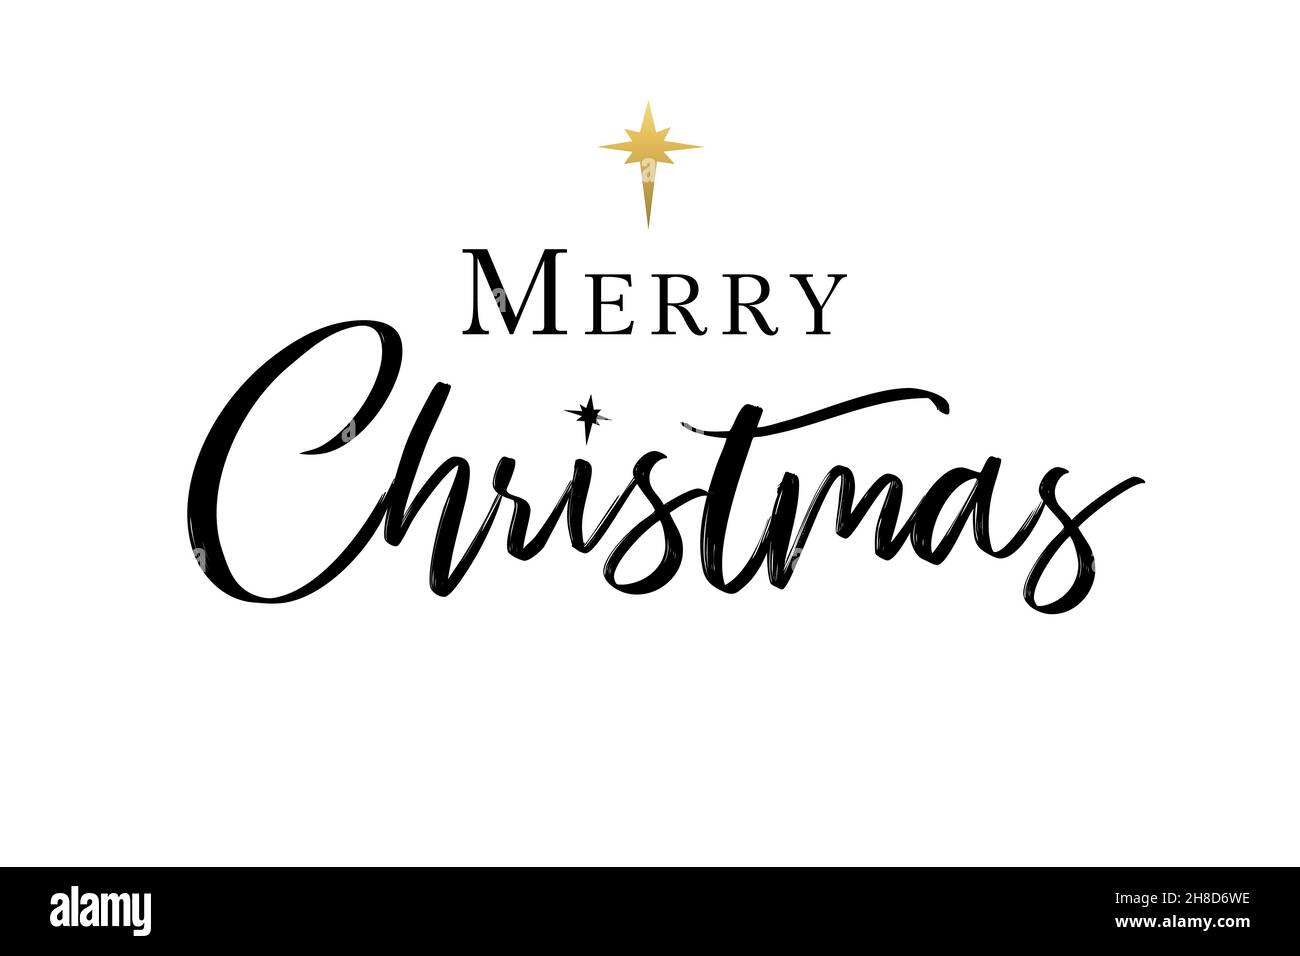 Frohe Weihnachten elegante Kalligraphie-Schrift. Christliche Typografie-Inschrift und goldener Stern von Bethlehem. Religiöse Krippe Vektor Grußkarte Stock Vektor